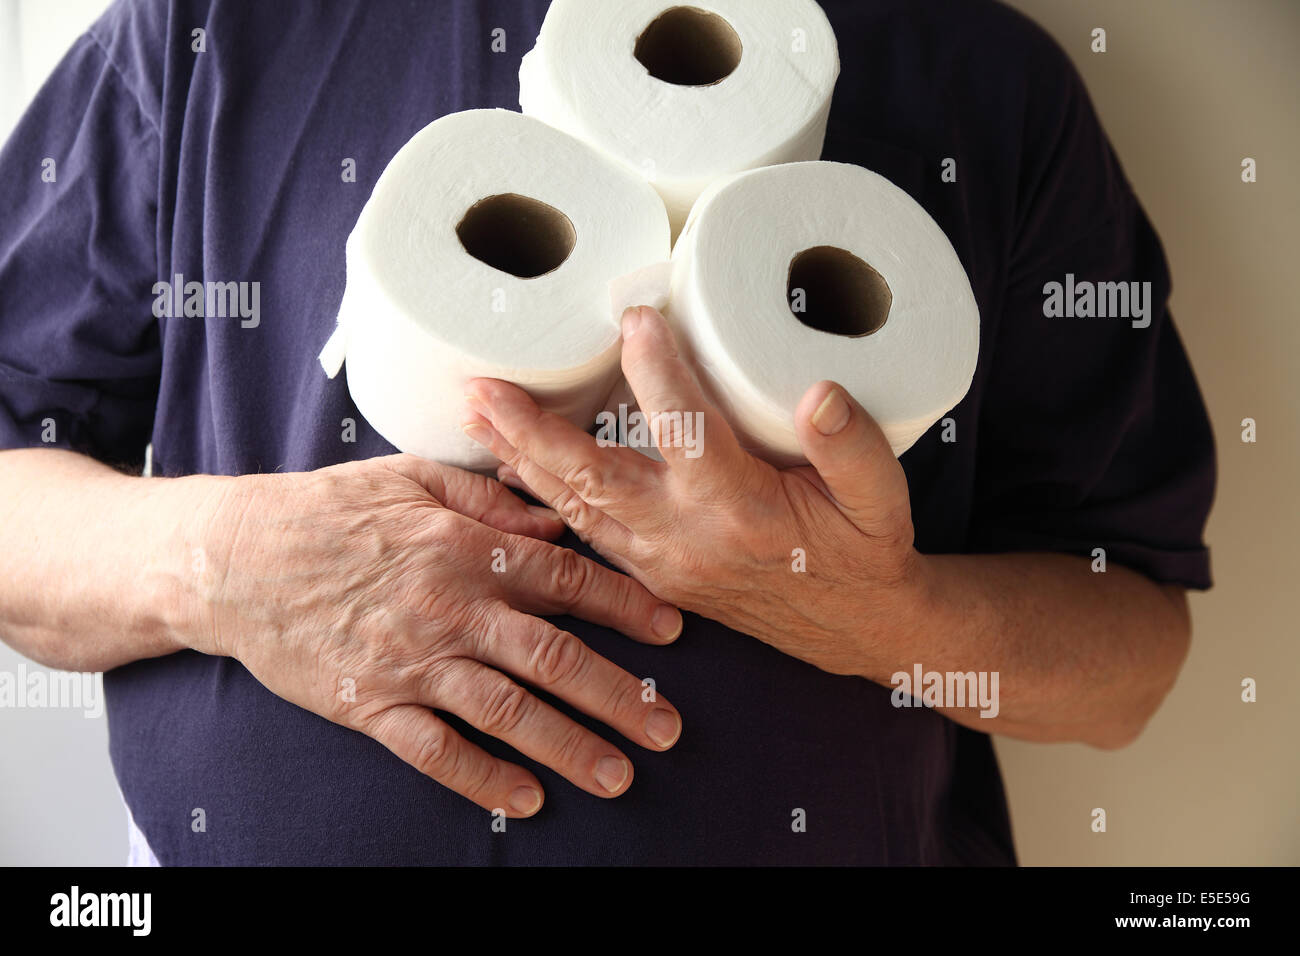 Mann hat Magenbeschwerden und hält drei Rollen Toilettenpapier Stockfoto